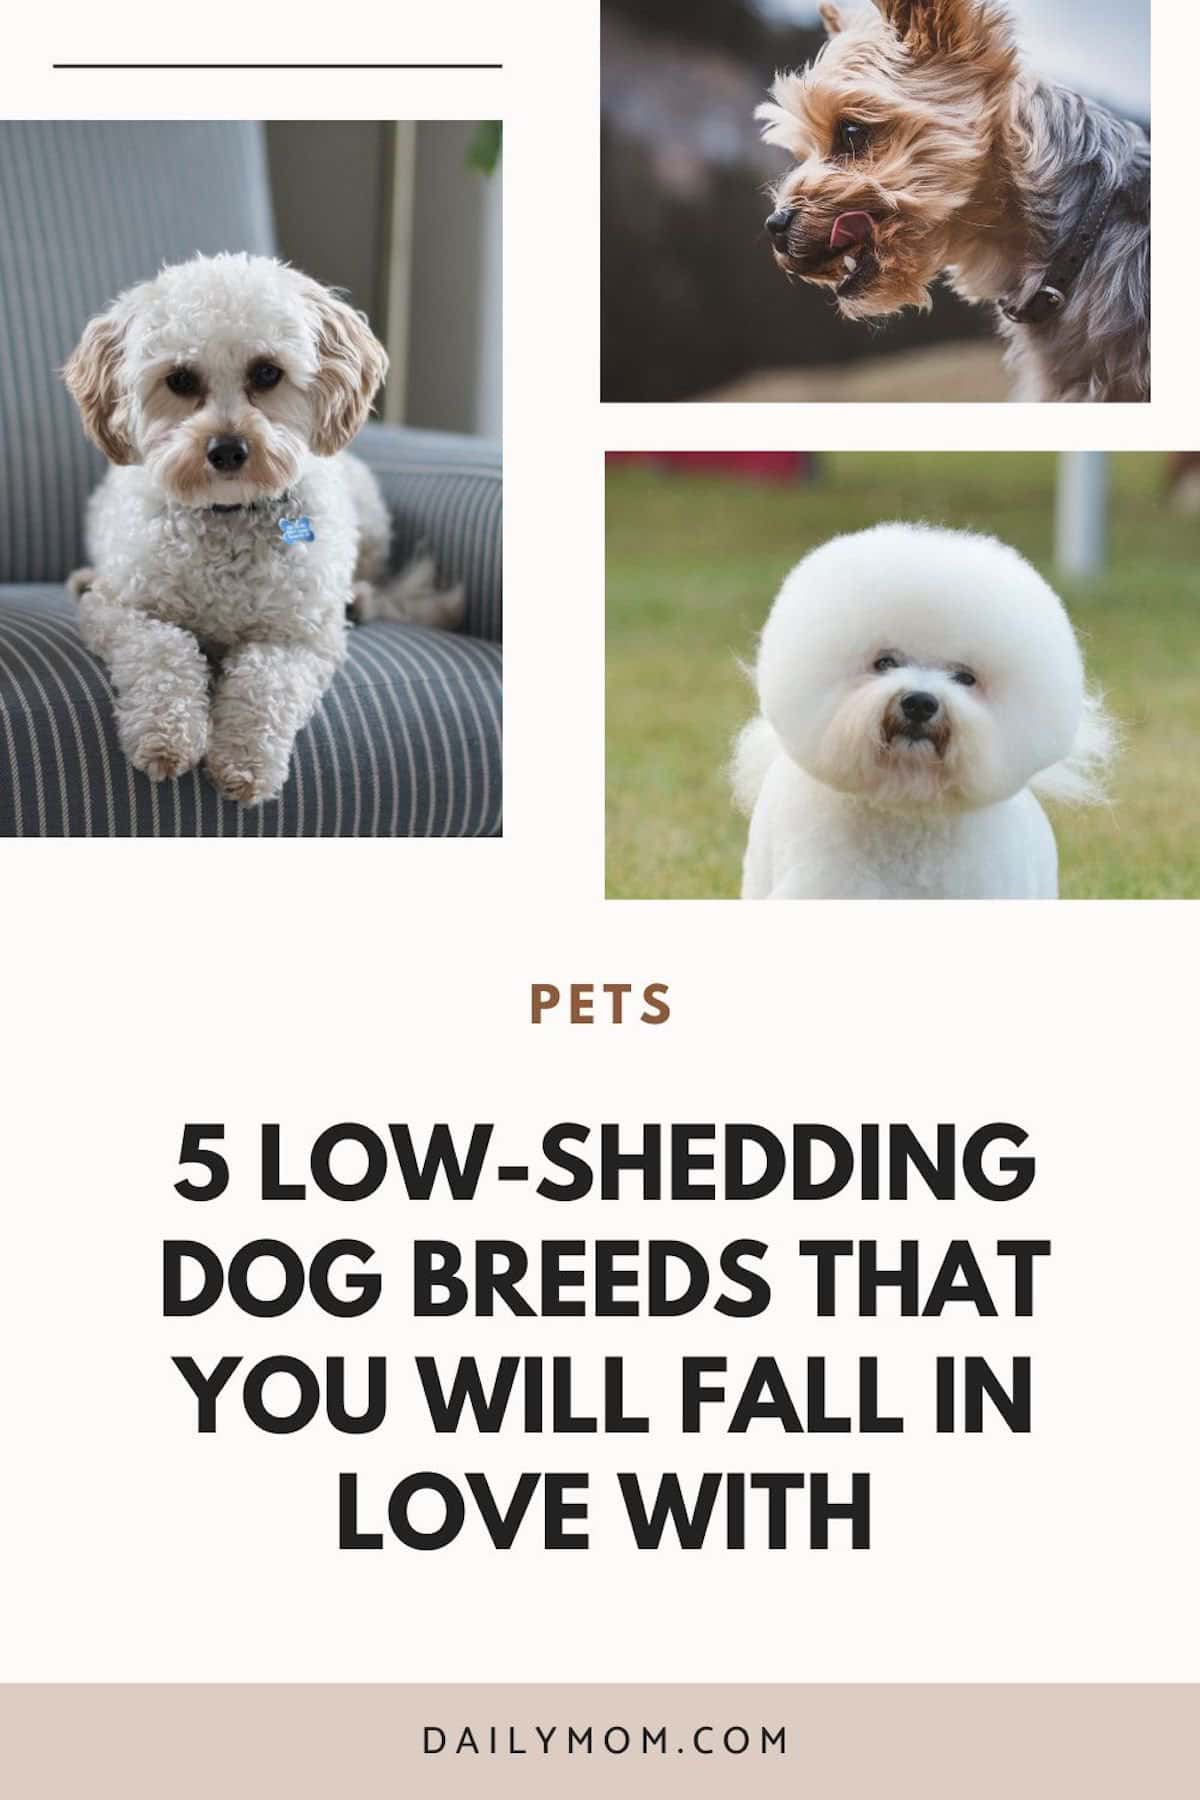 Daily Mom Parent Portal Low-Shedding Dog Breeds